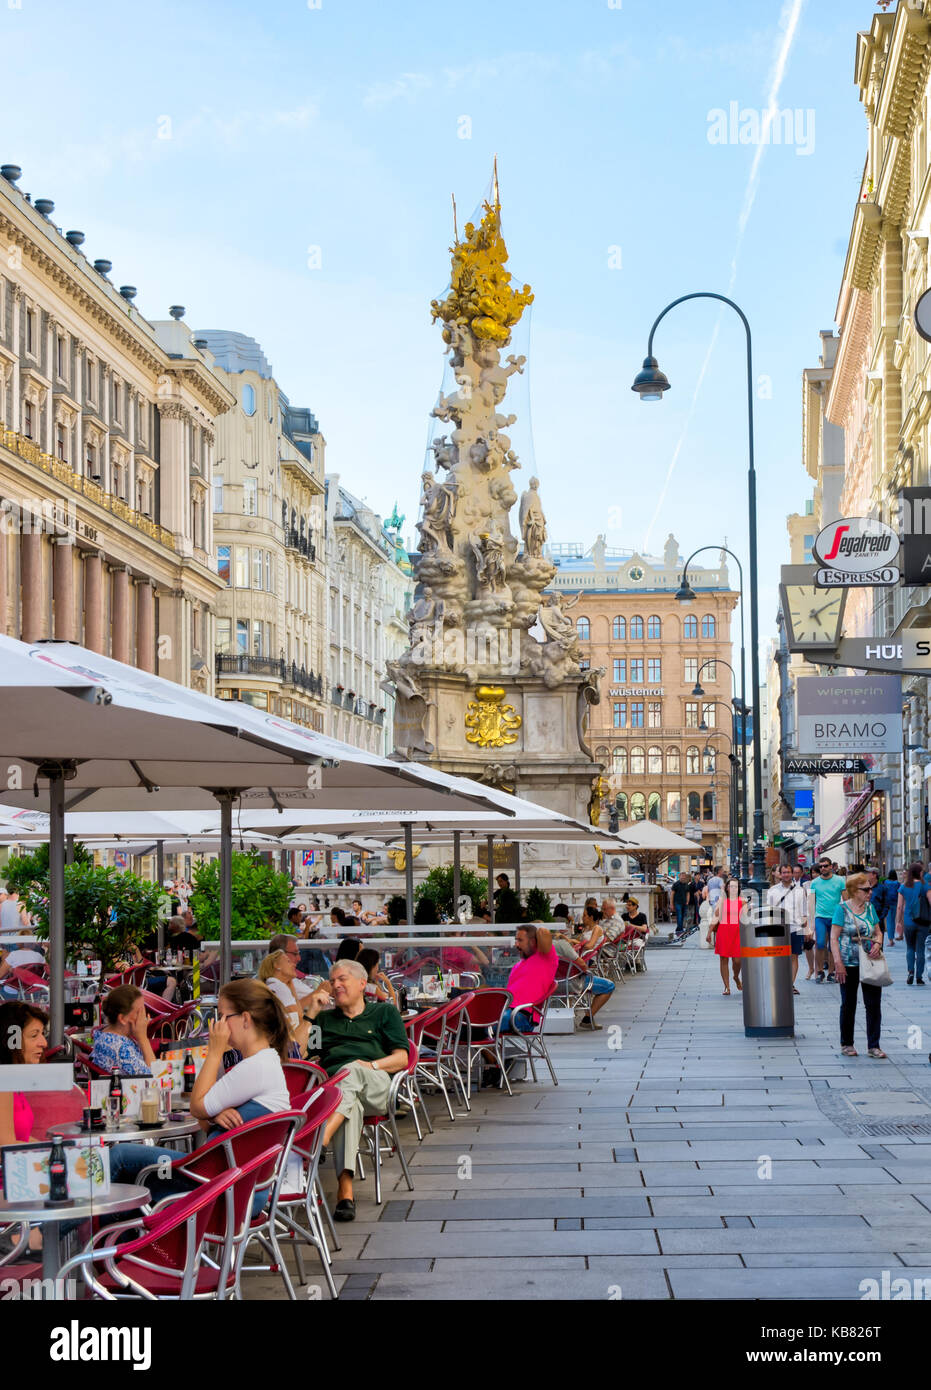 VIENA, AUSTRIA - AGOSTO 28: Personas en un restaurante en la zona peatonal de Viena, Austria el 28 de agosto de 2017. Foto con vista a la peste barroca Foto de stock